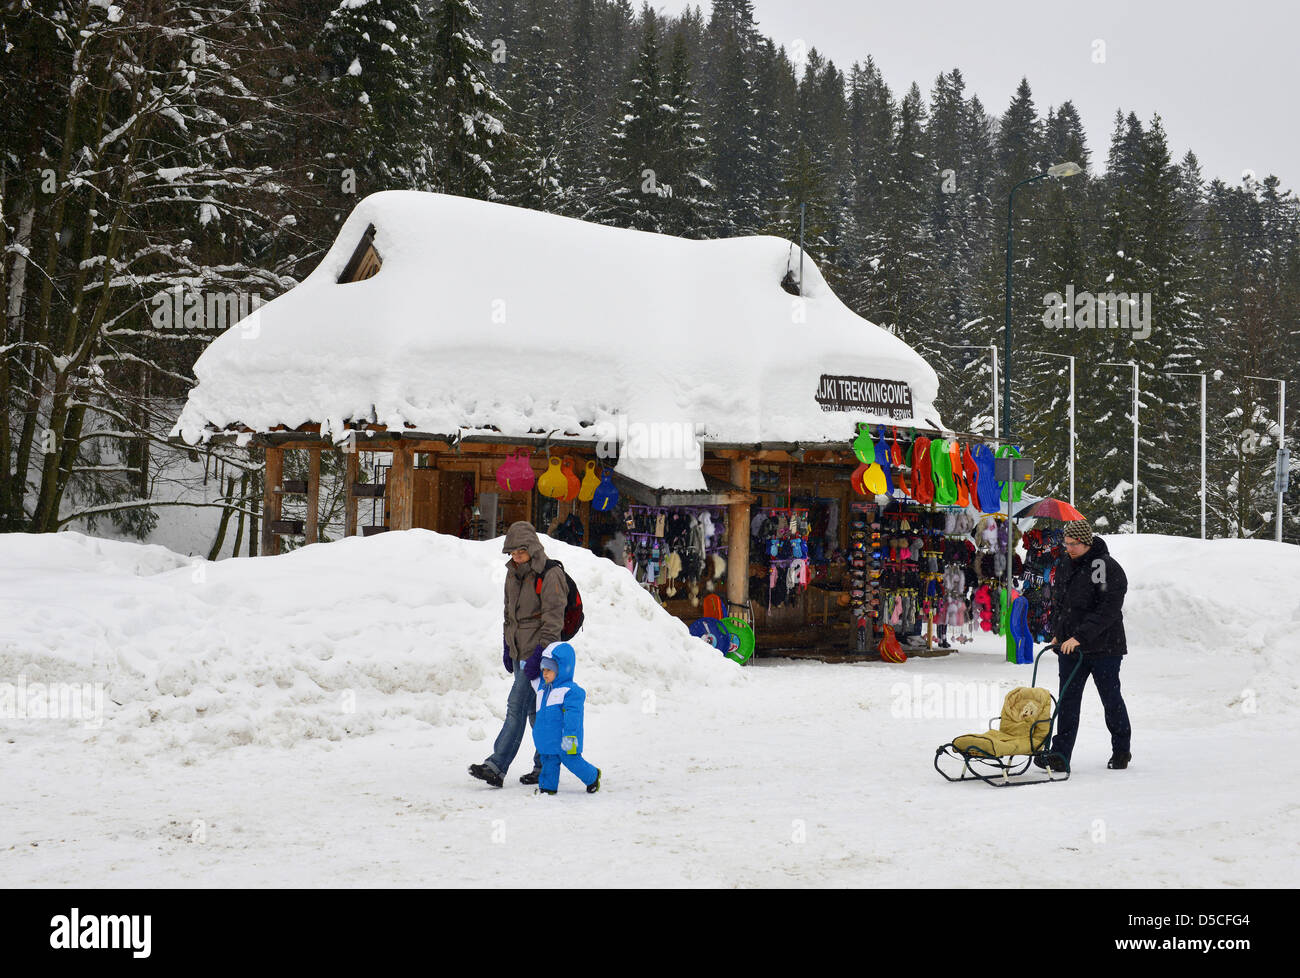 Tourist shop in the snow at Zakopane, Poland Stock Photo